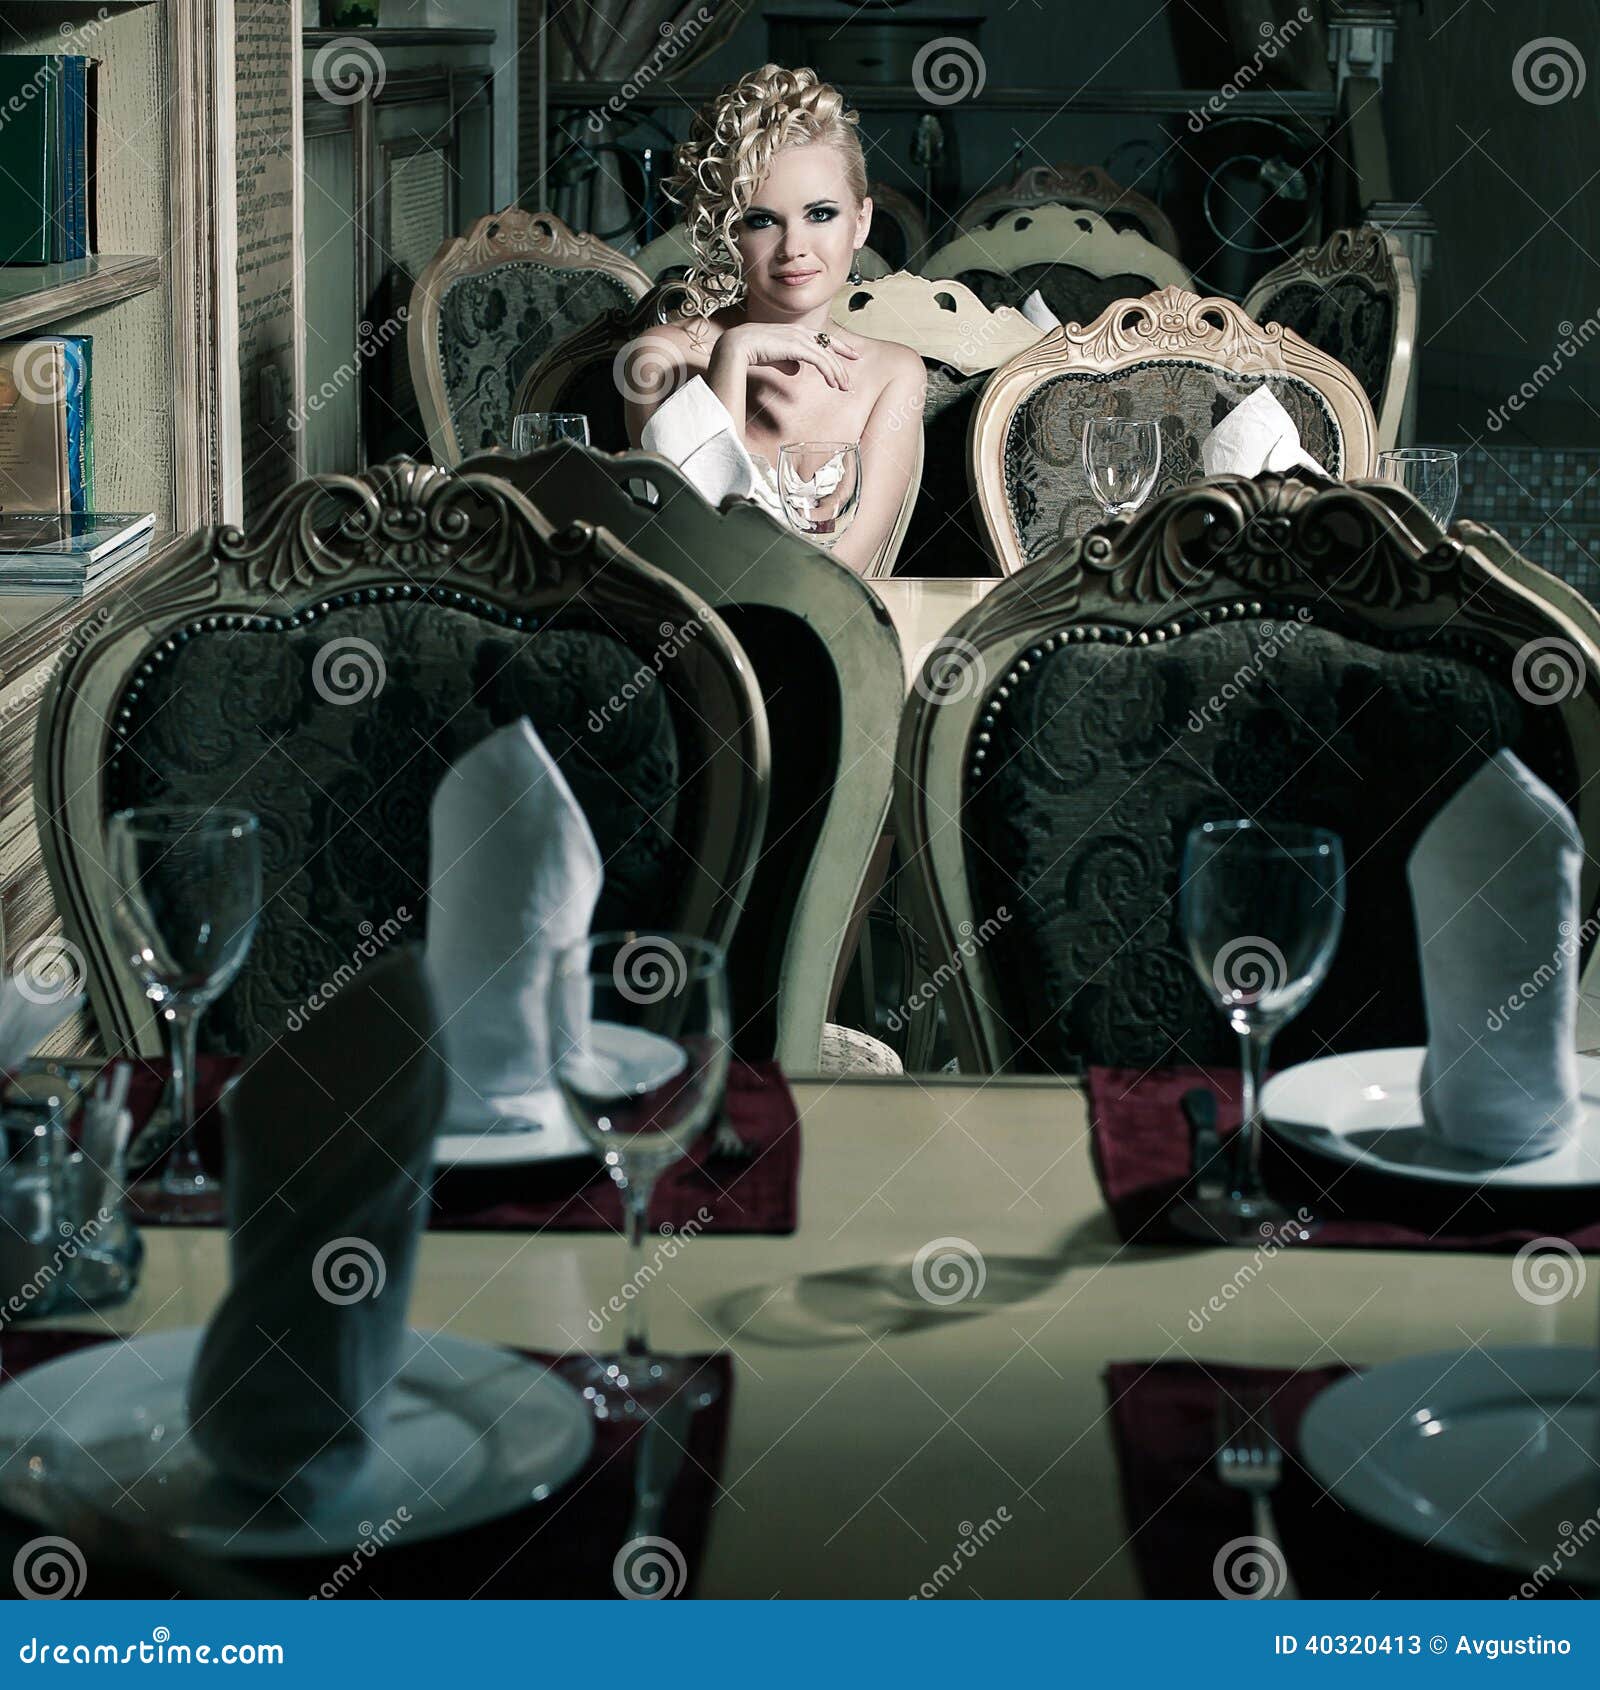 Rétro femme dans l'intérieur classique. Portrait d'une femme magnifique s'asseyant dans le restaurant avec l'intérieur classique luxueux. Style de vintage. Tir d'intérieur